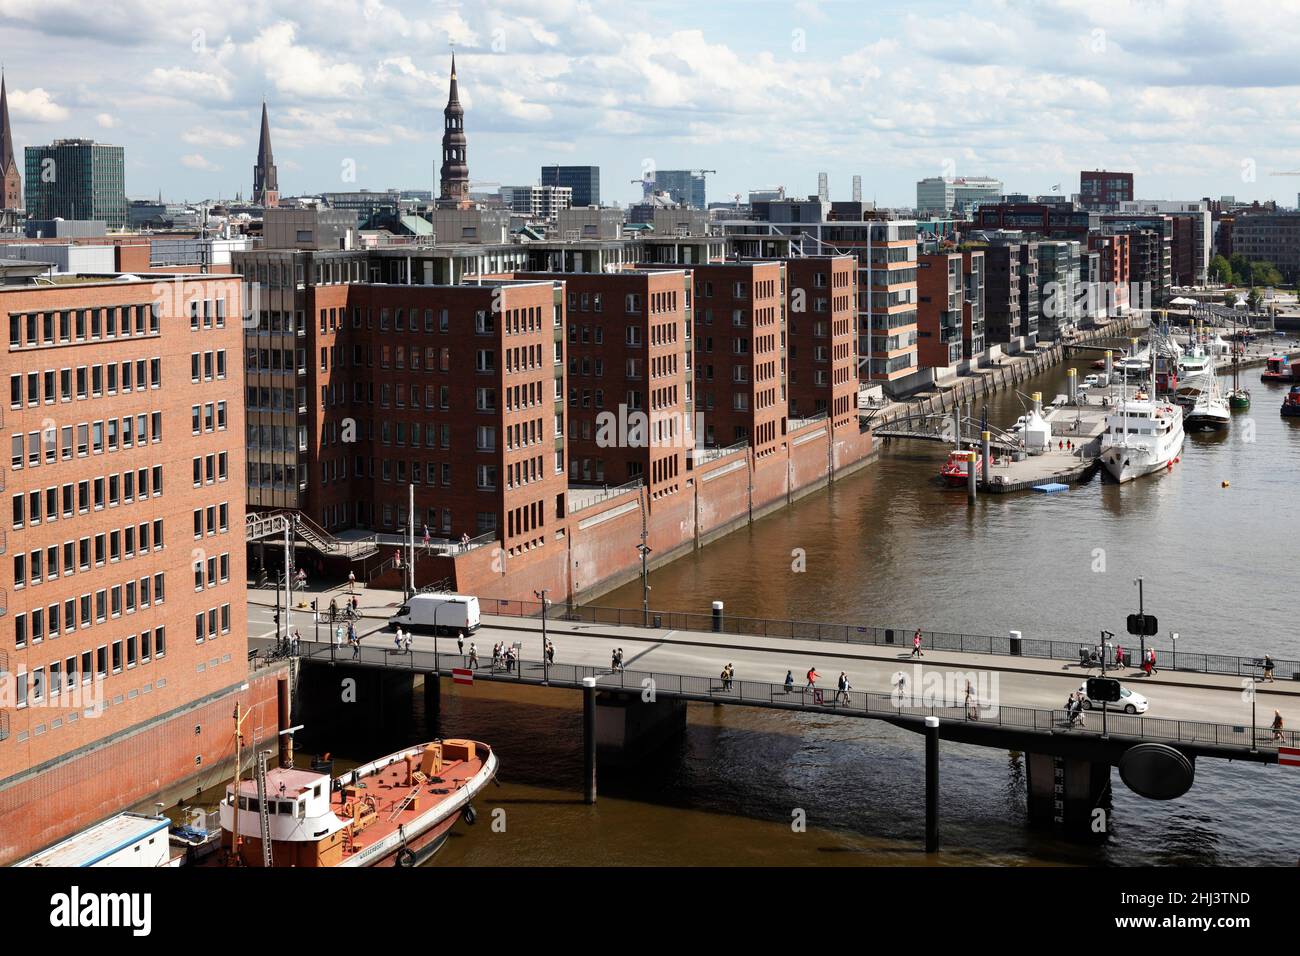 El barrio de Kaiserkai en la ciudad portuaria de Hamburgo, Alemania Foto de stock